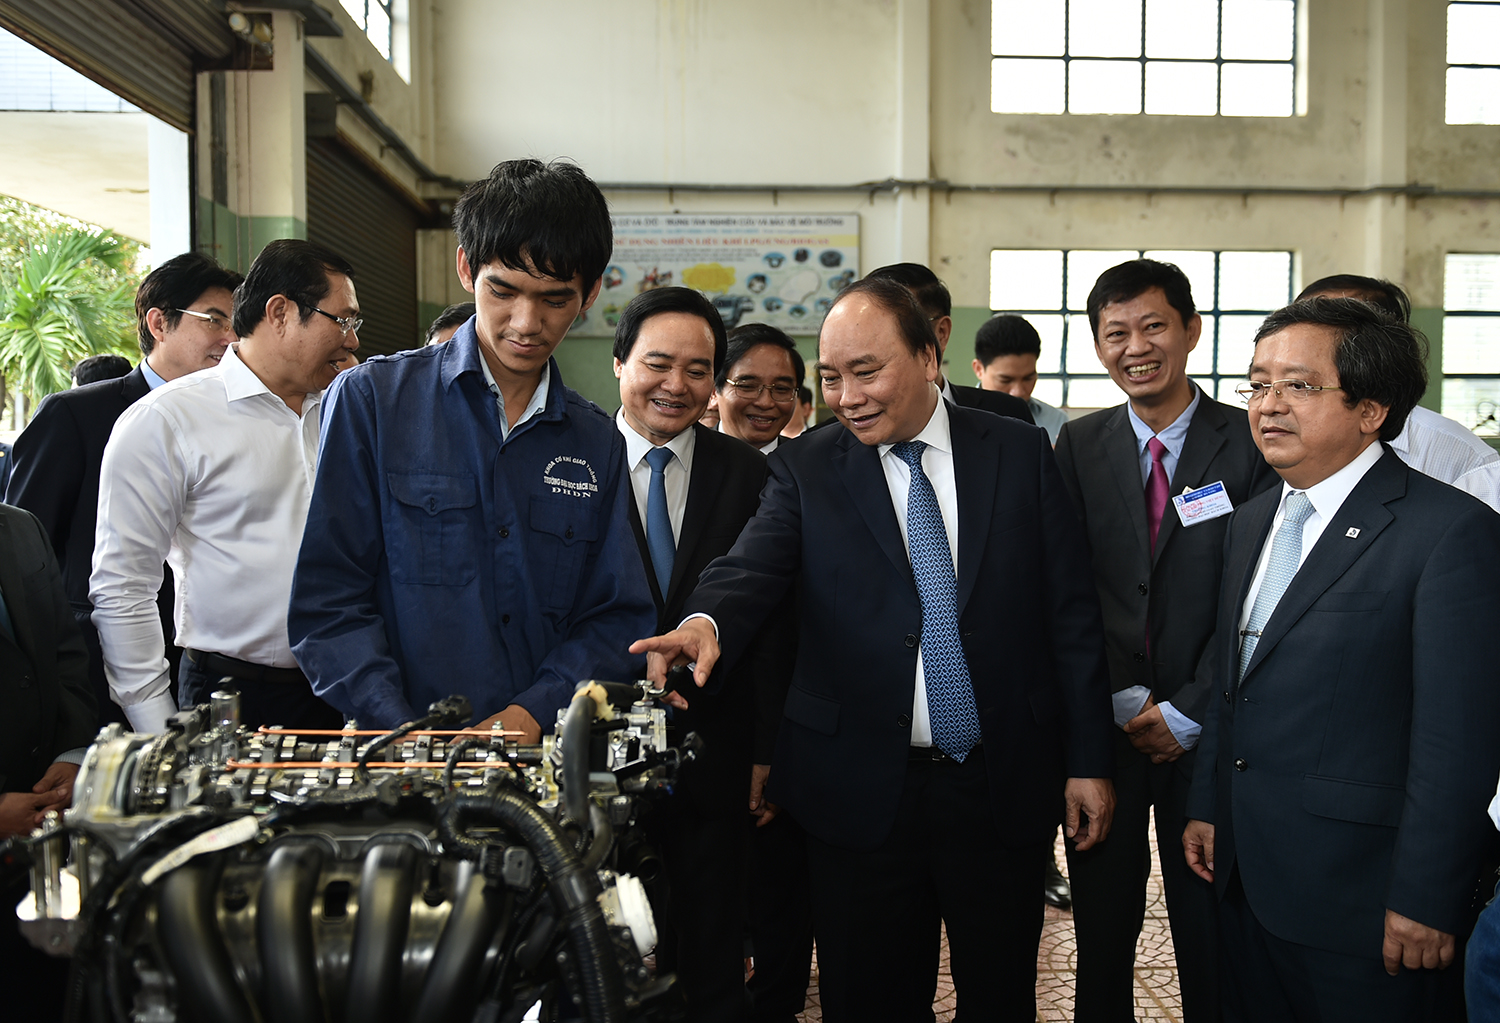  Thủ tướng thăm khu thực hành cơ khí của Đại học Bách khoa (Đại học Đà Nẵng). Ảnh: VGP